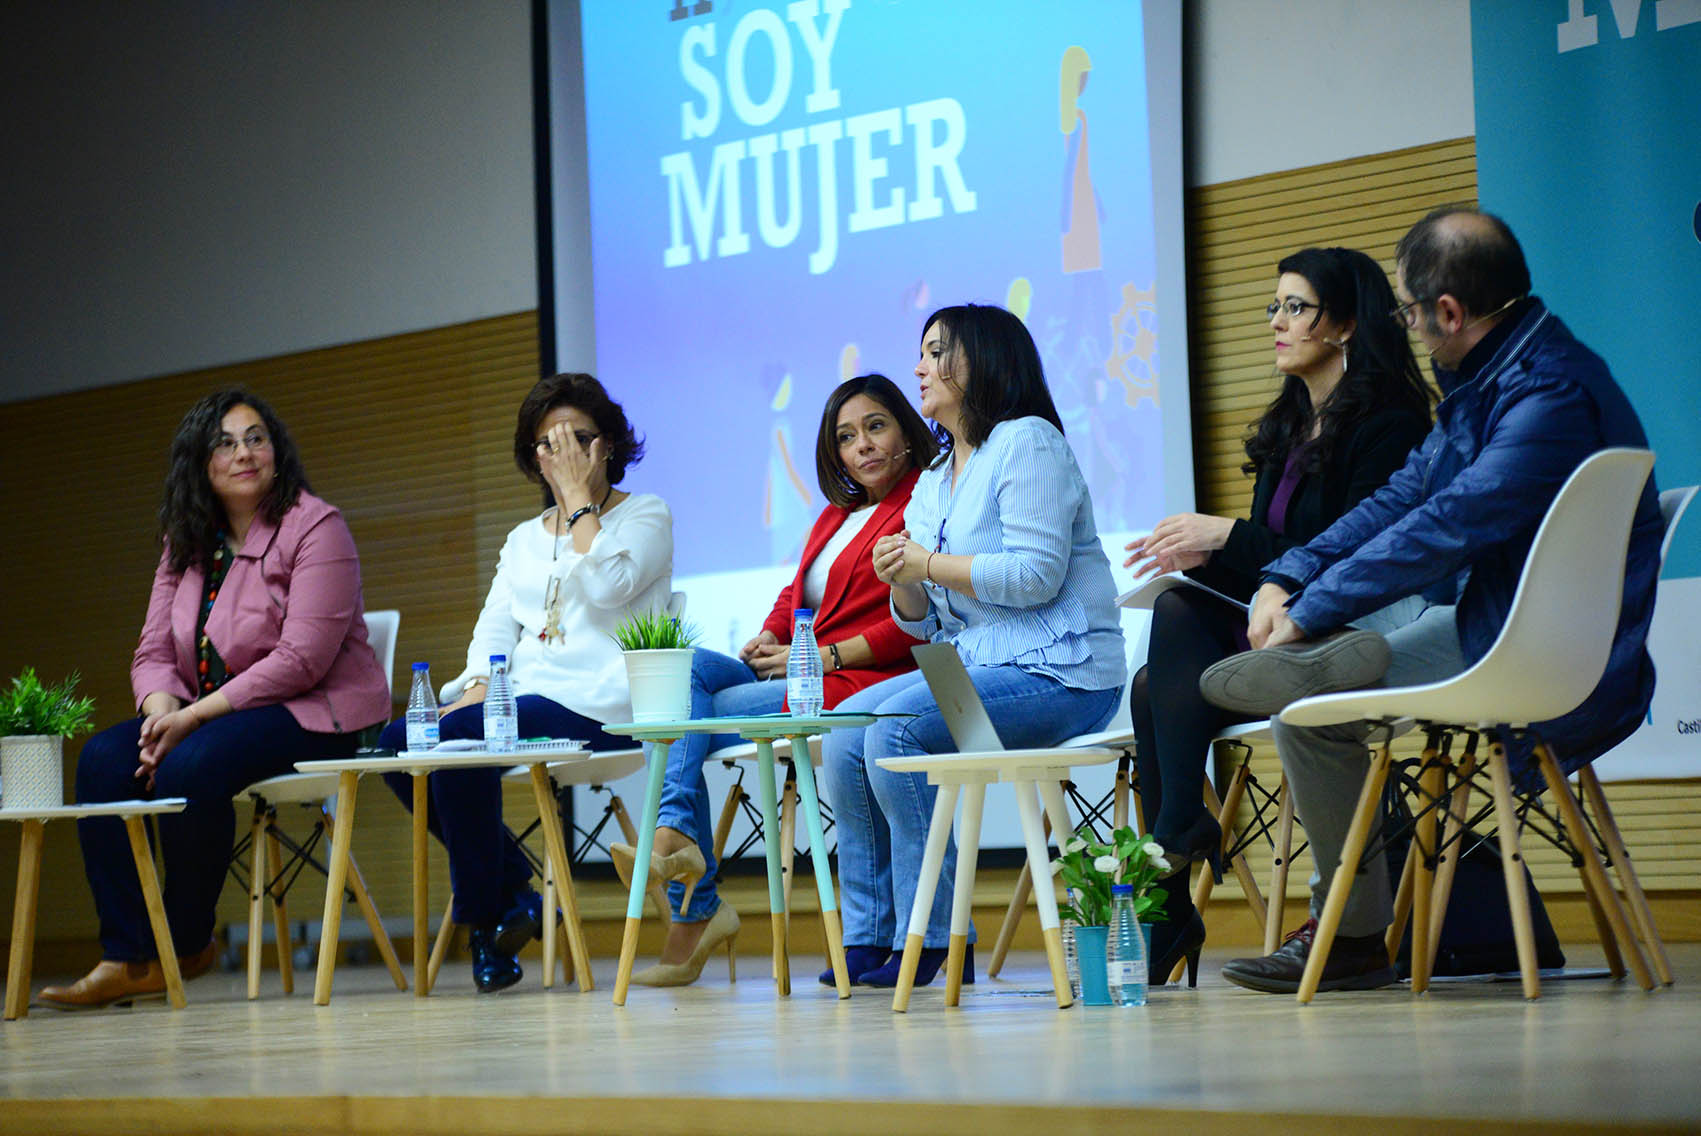 micromachismos Mesa de debate: "Avanzando en igualdad", en la II Jornada "Soy Mujer".